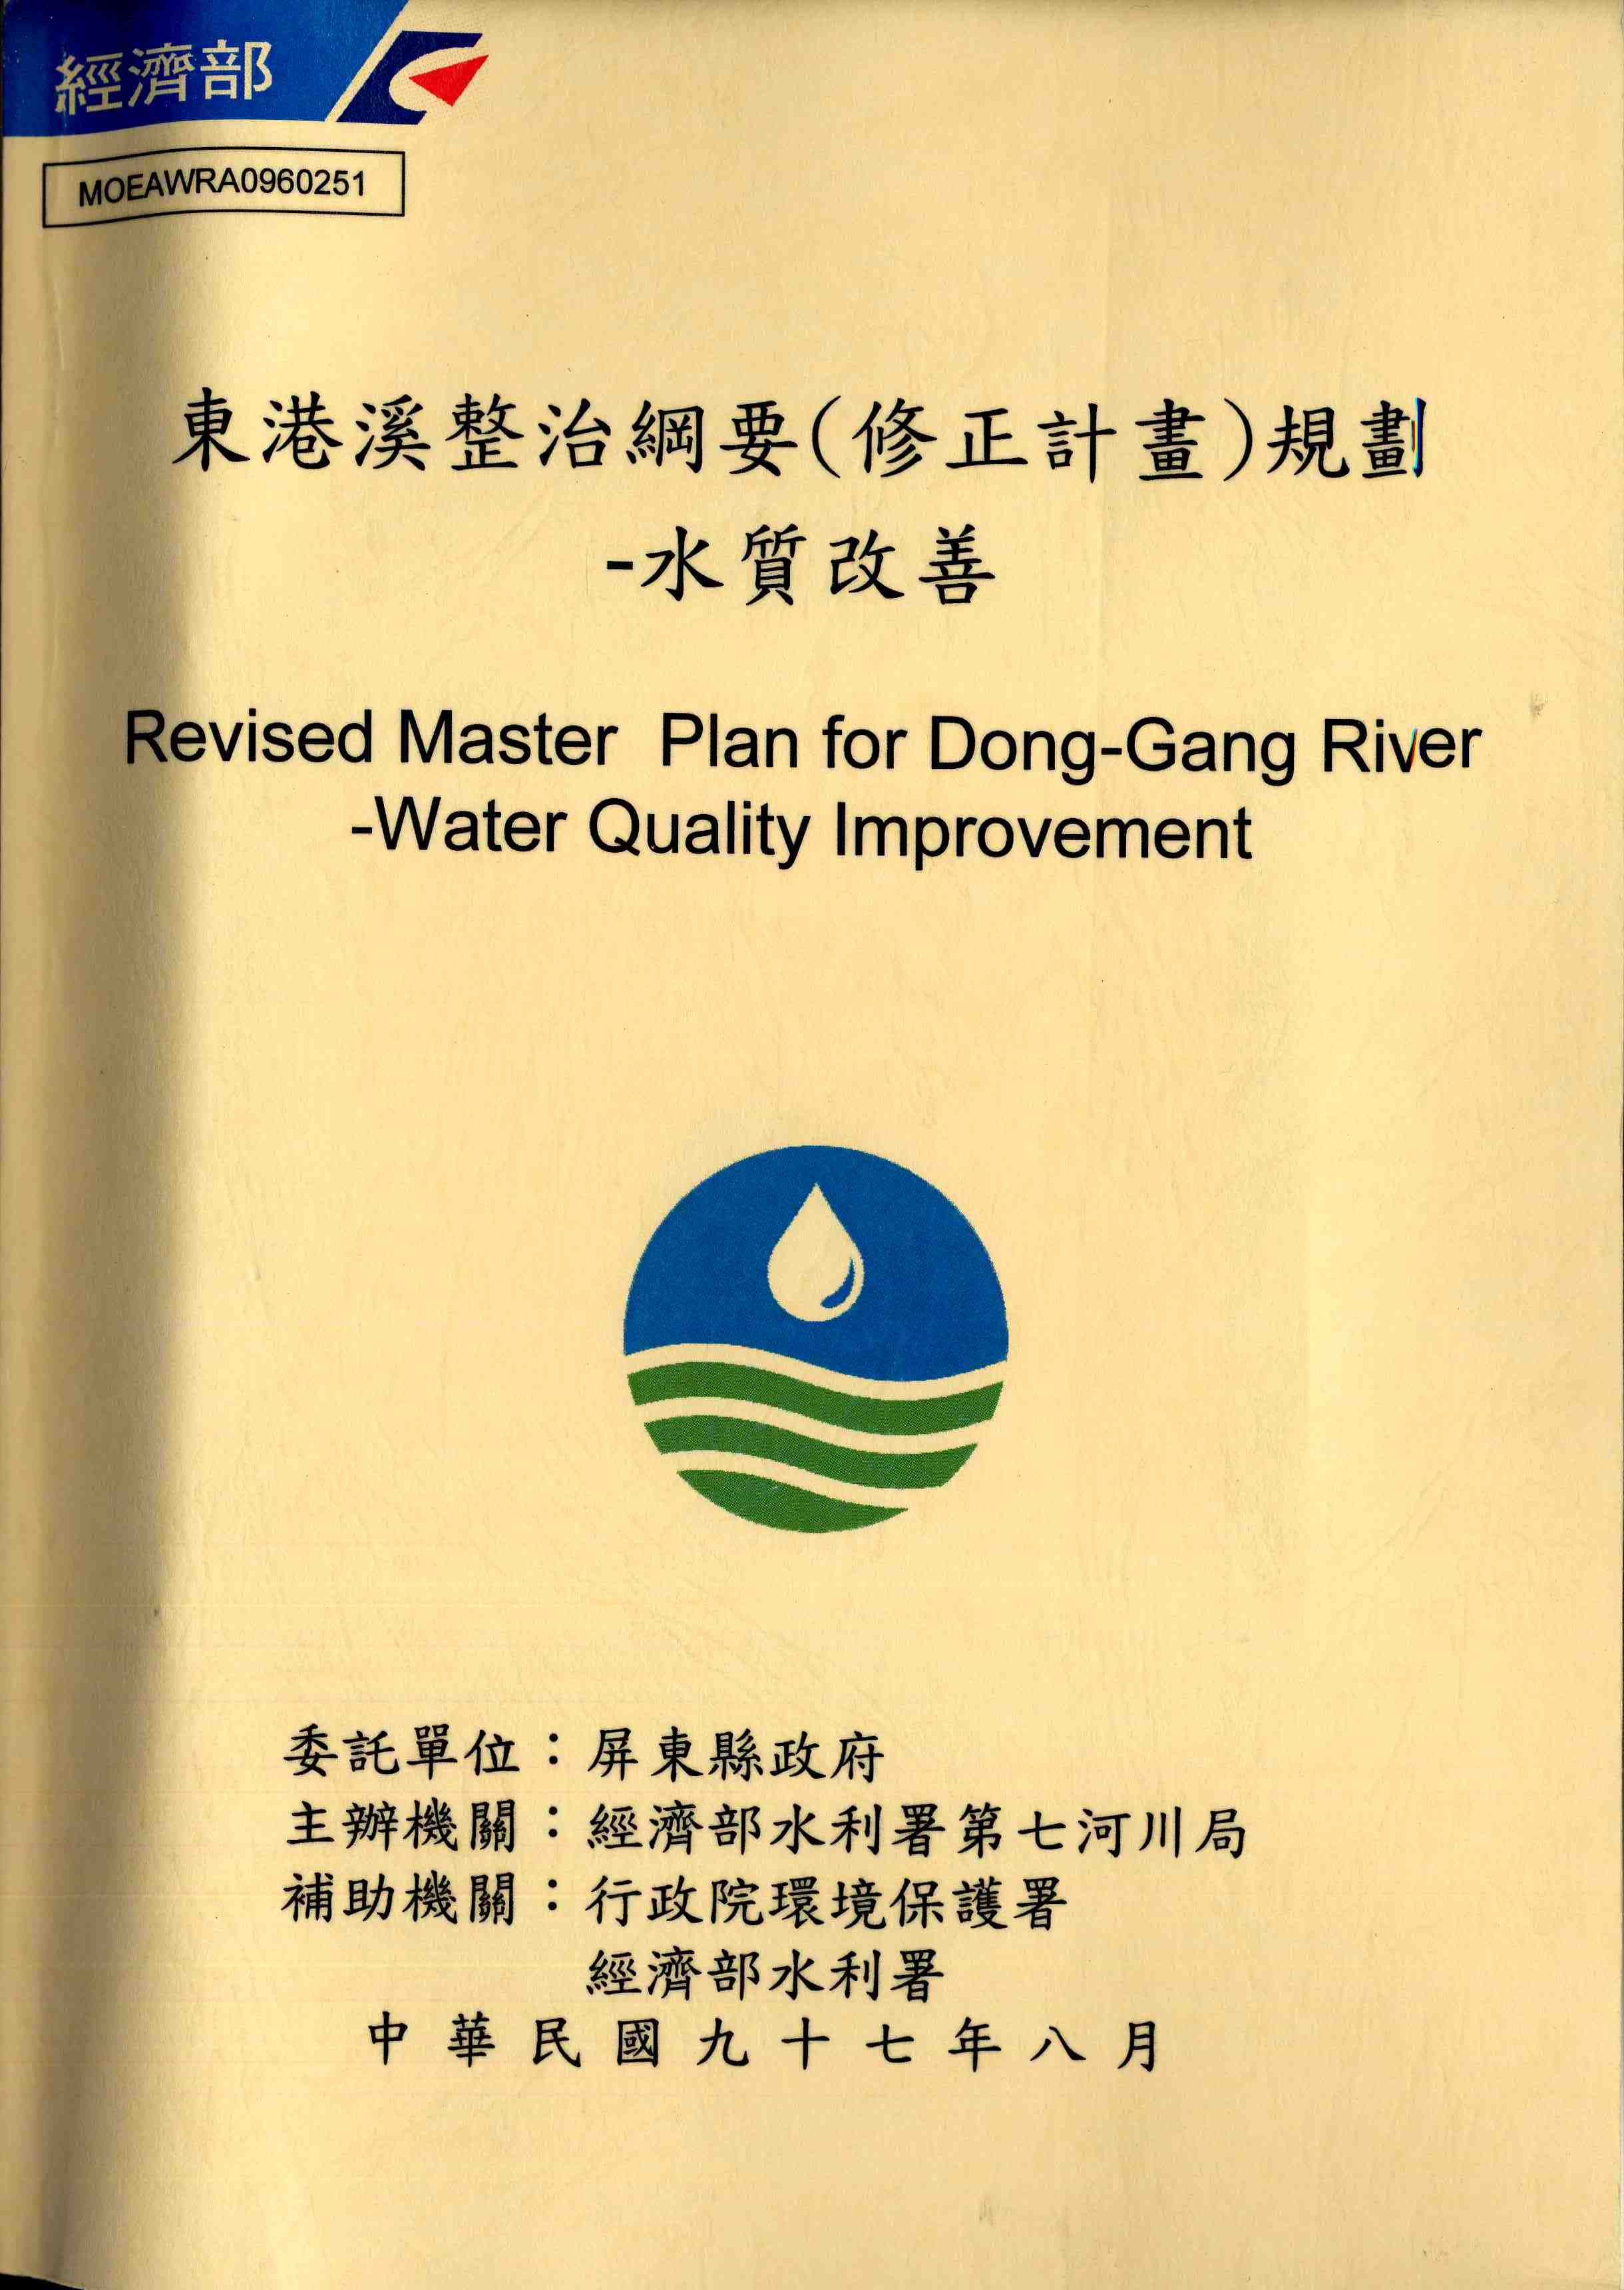 東港溪整治綱要(修正計畫)規劃-水質改善　